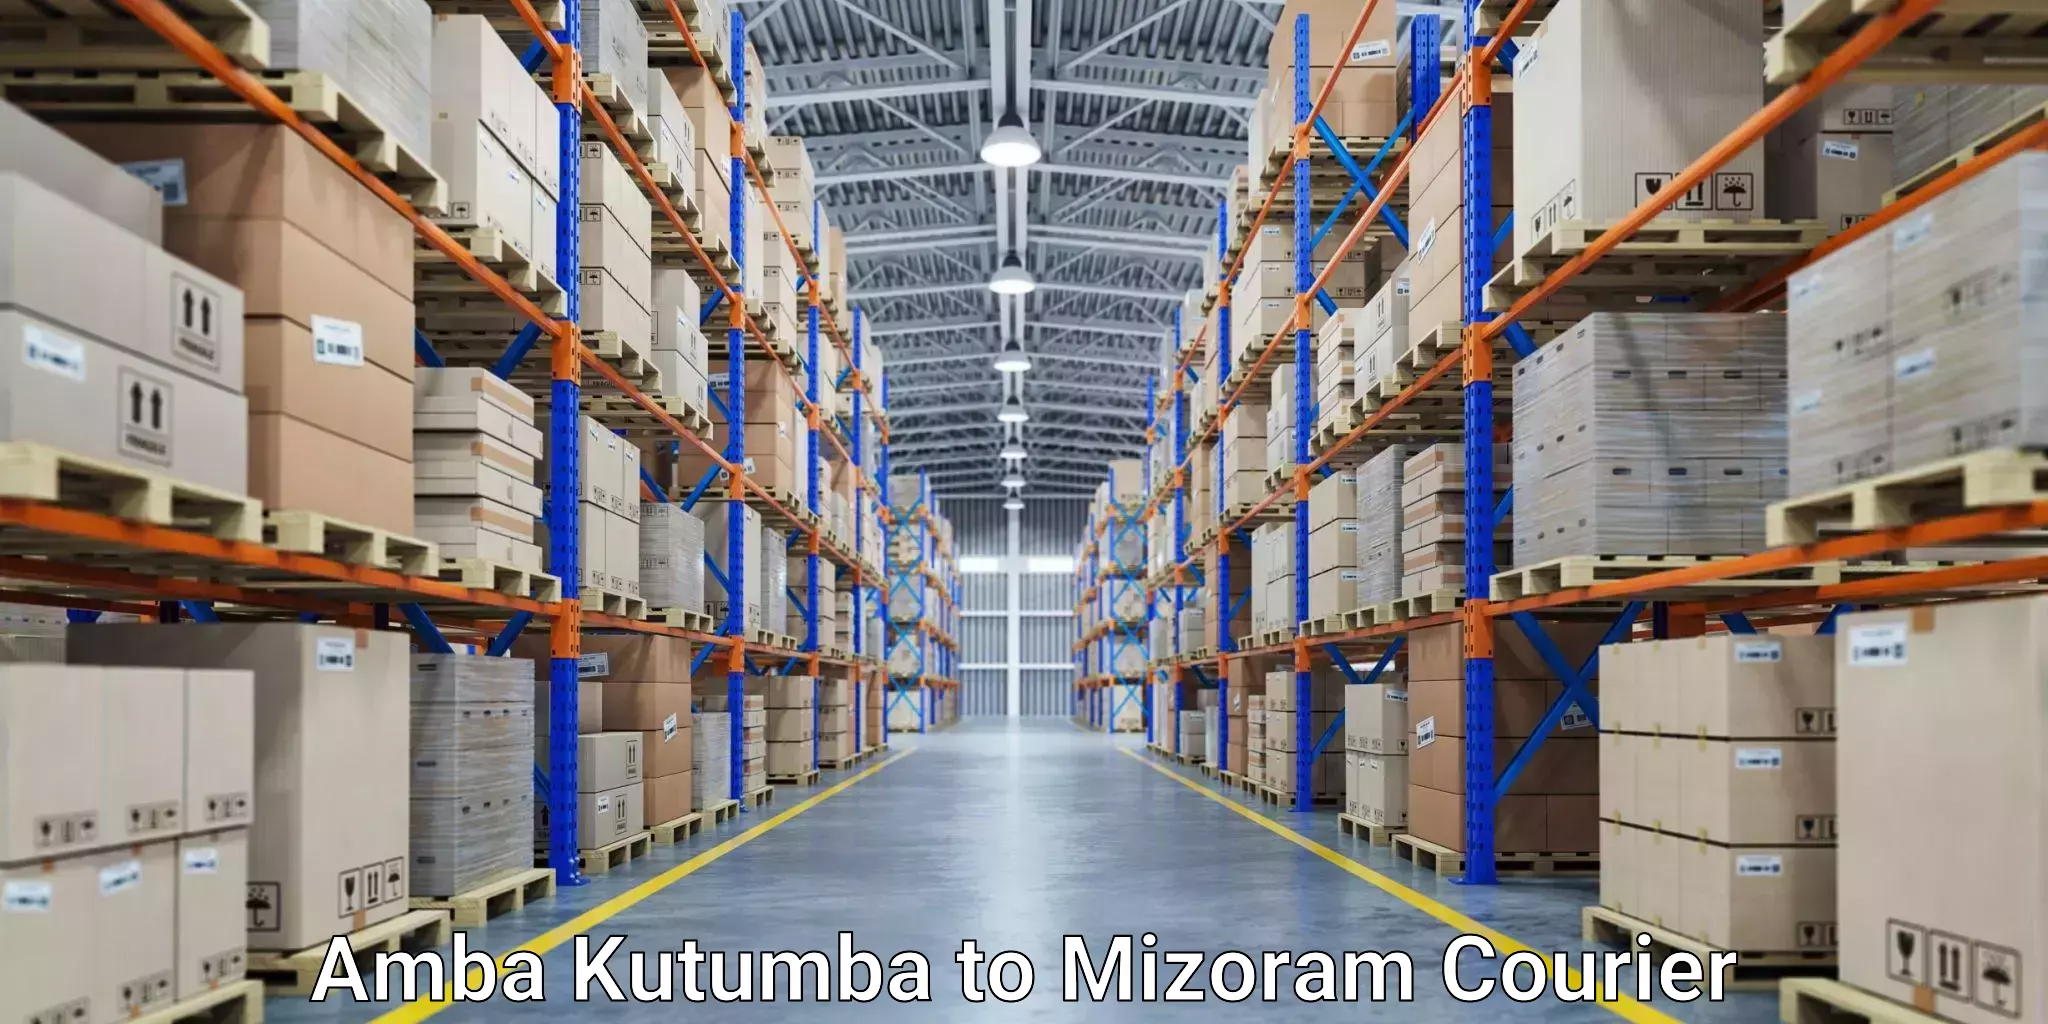 Modern courier technology Amba Kutumba to Kolasib